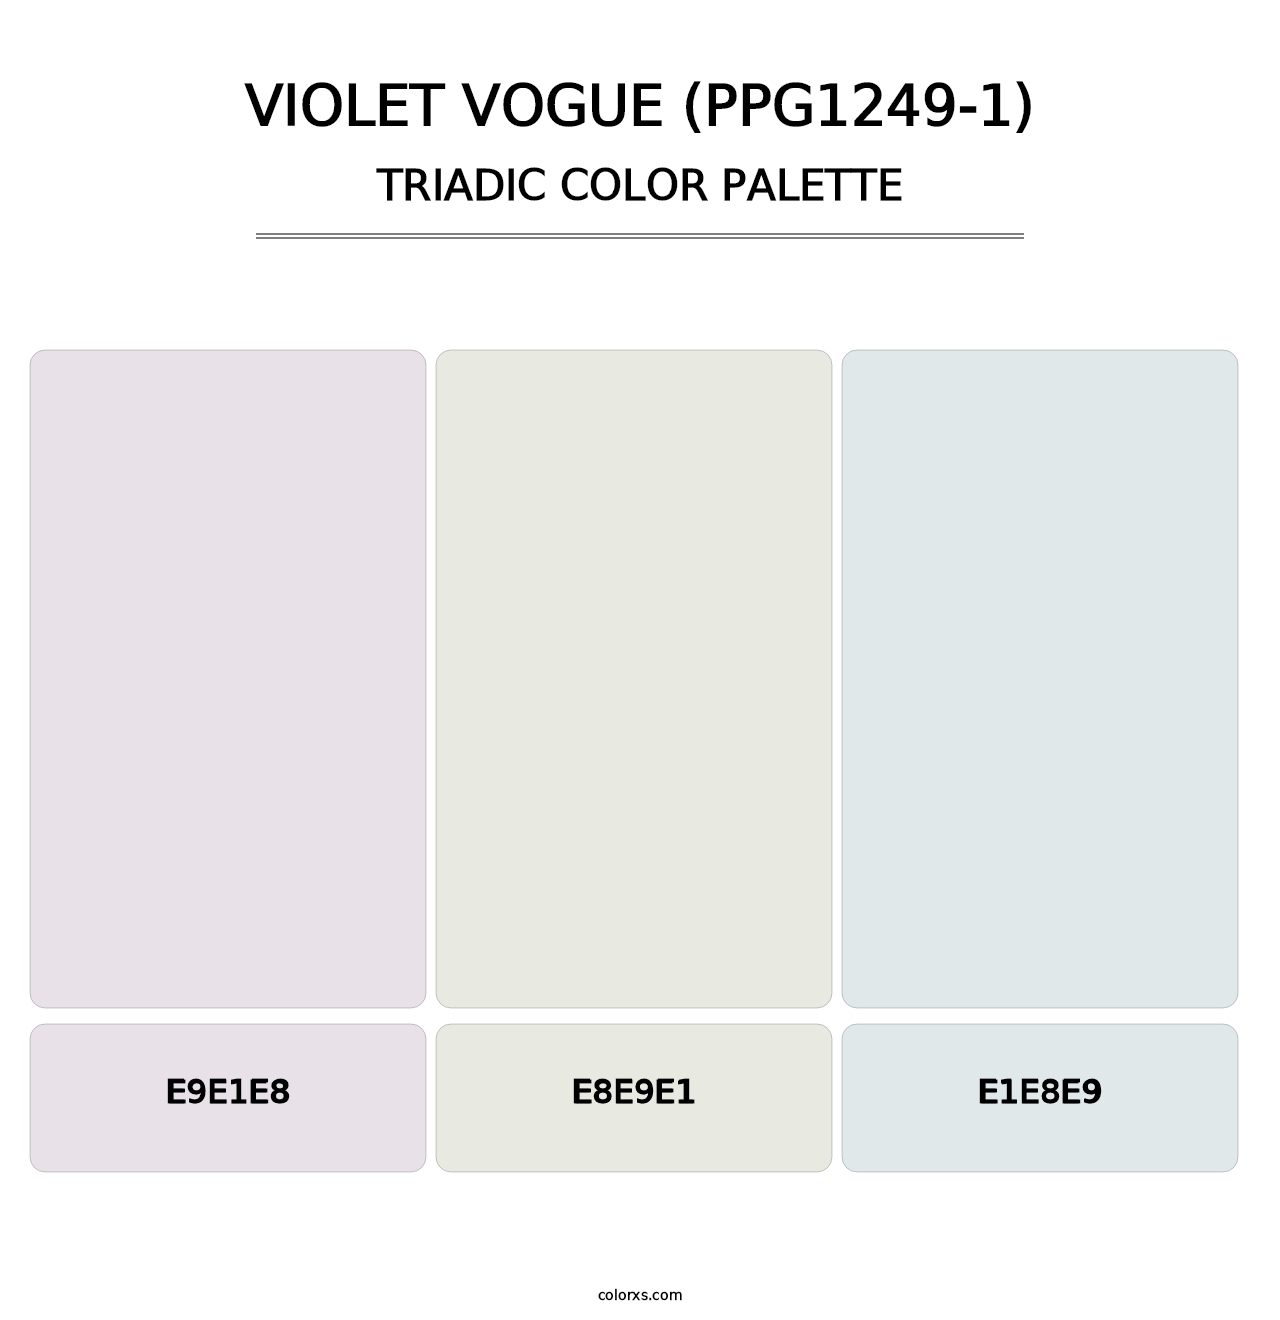 Violet Vogue (PPG1249-1) - Triadic Color Palette